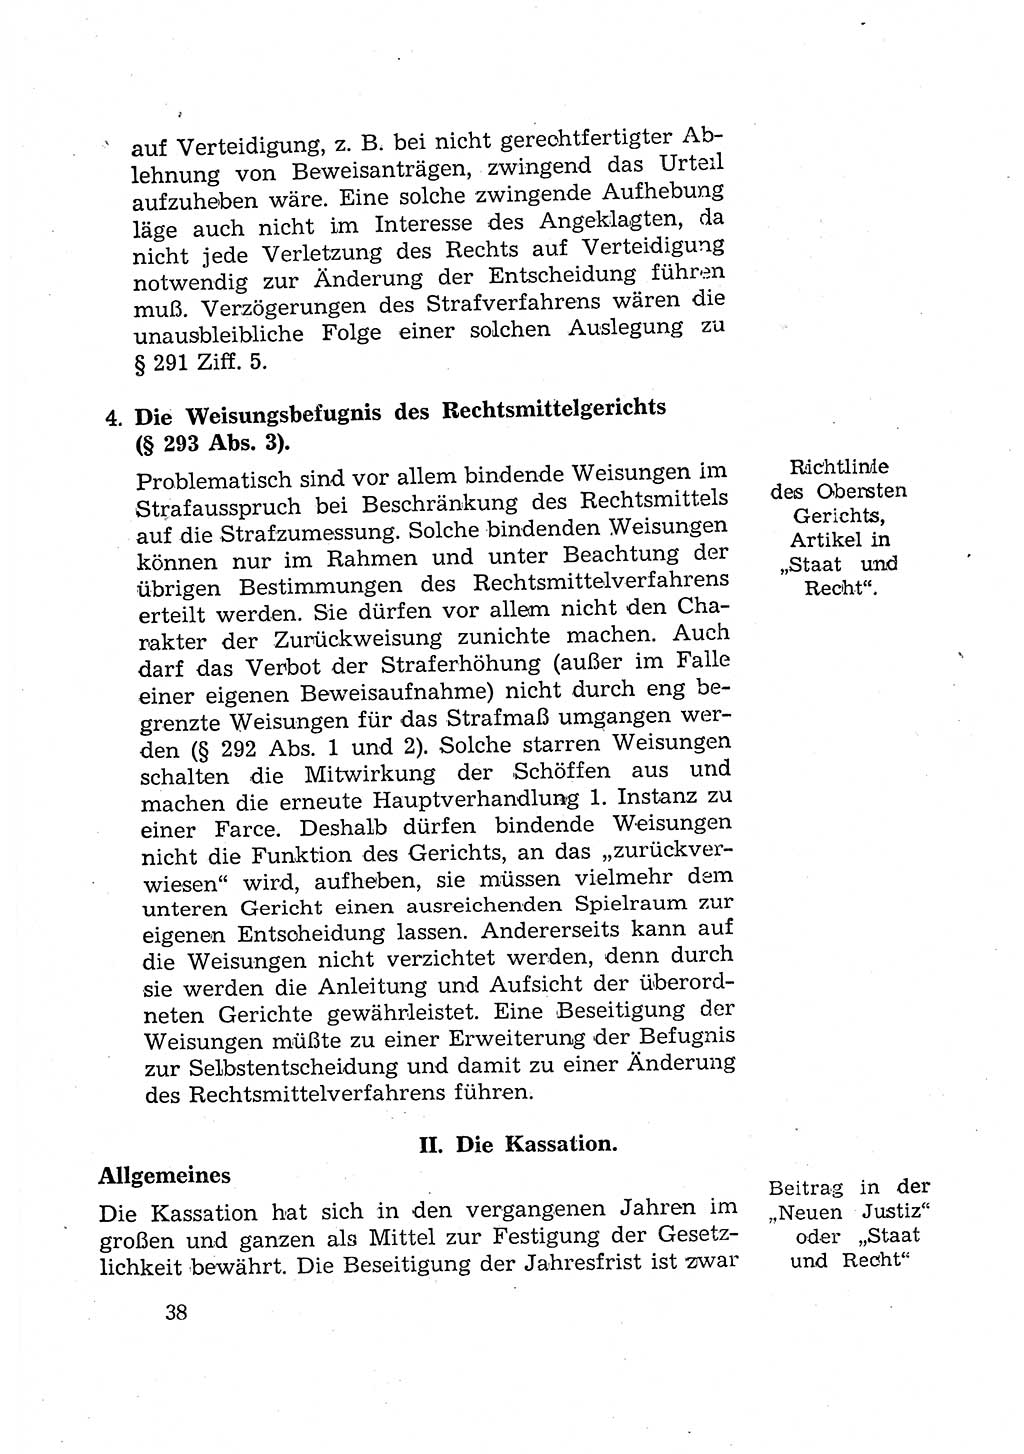 Bericht der Kommission zur Überprüfung der Anwendung der StPO (Strafprozeßordnung) [Deutsche Demokratische Republik (DDR)] 1956, Seite 38 (Ber. StPO DDR 1956, S. 38)